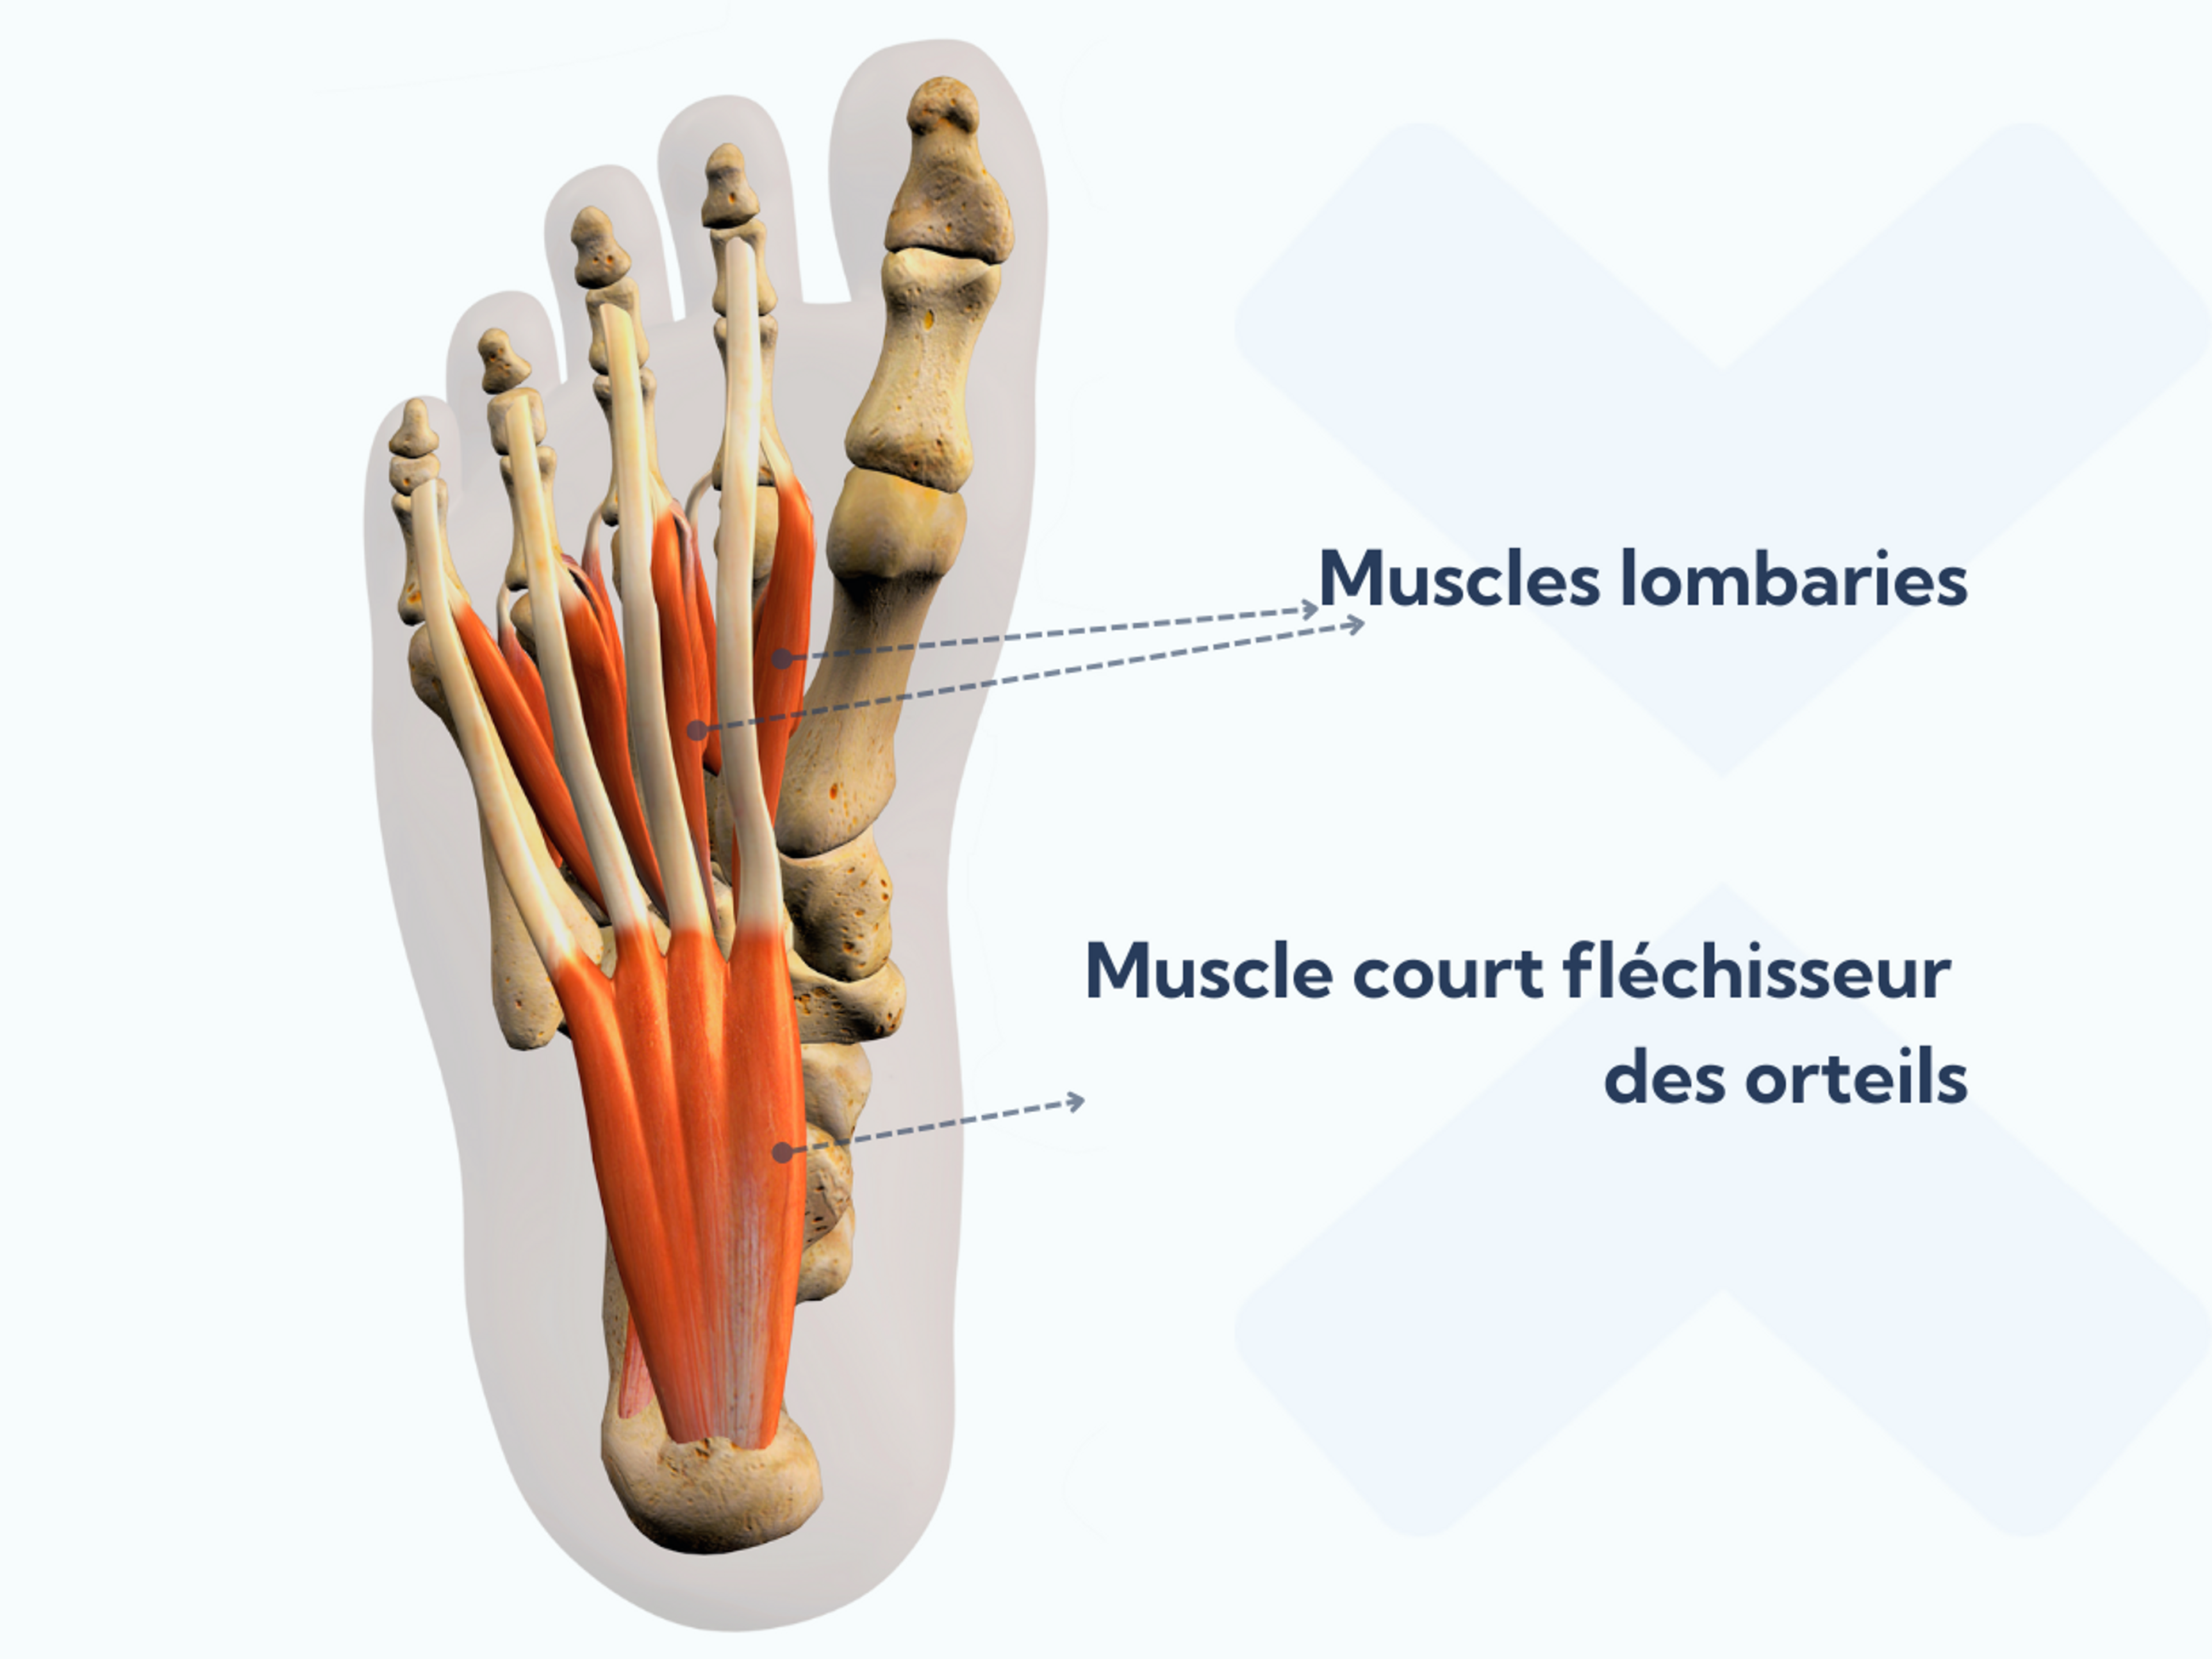 Les muscles lombaires et le muscle court fléchisseur des orteils forment les muscles intrinsèques profonds du pied